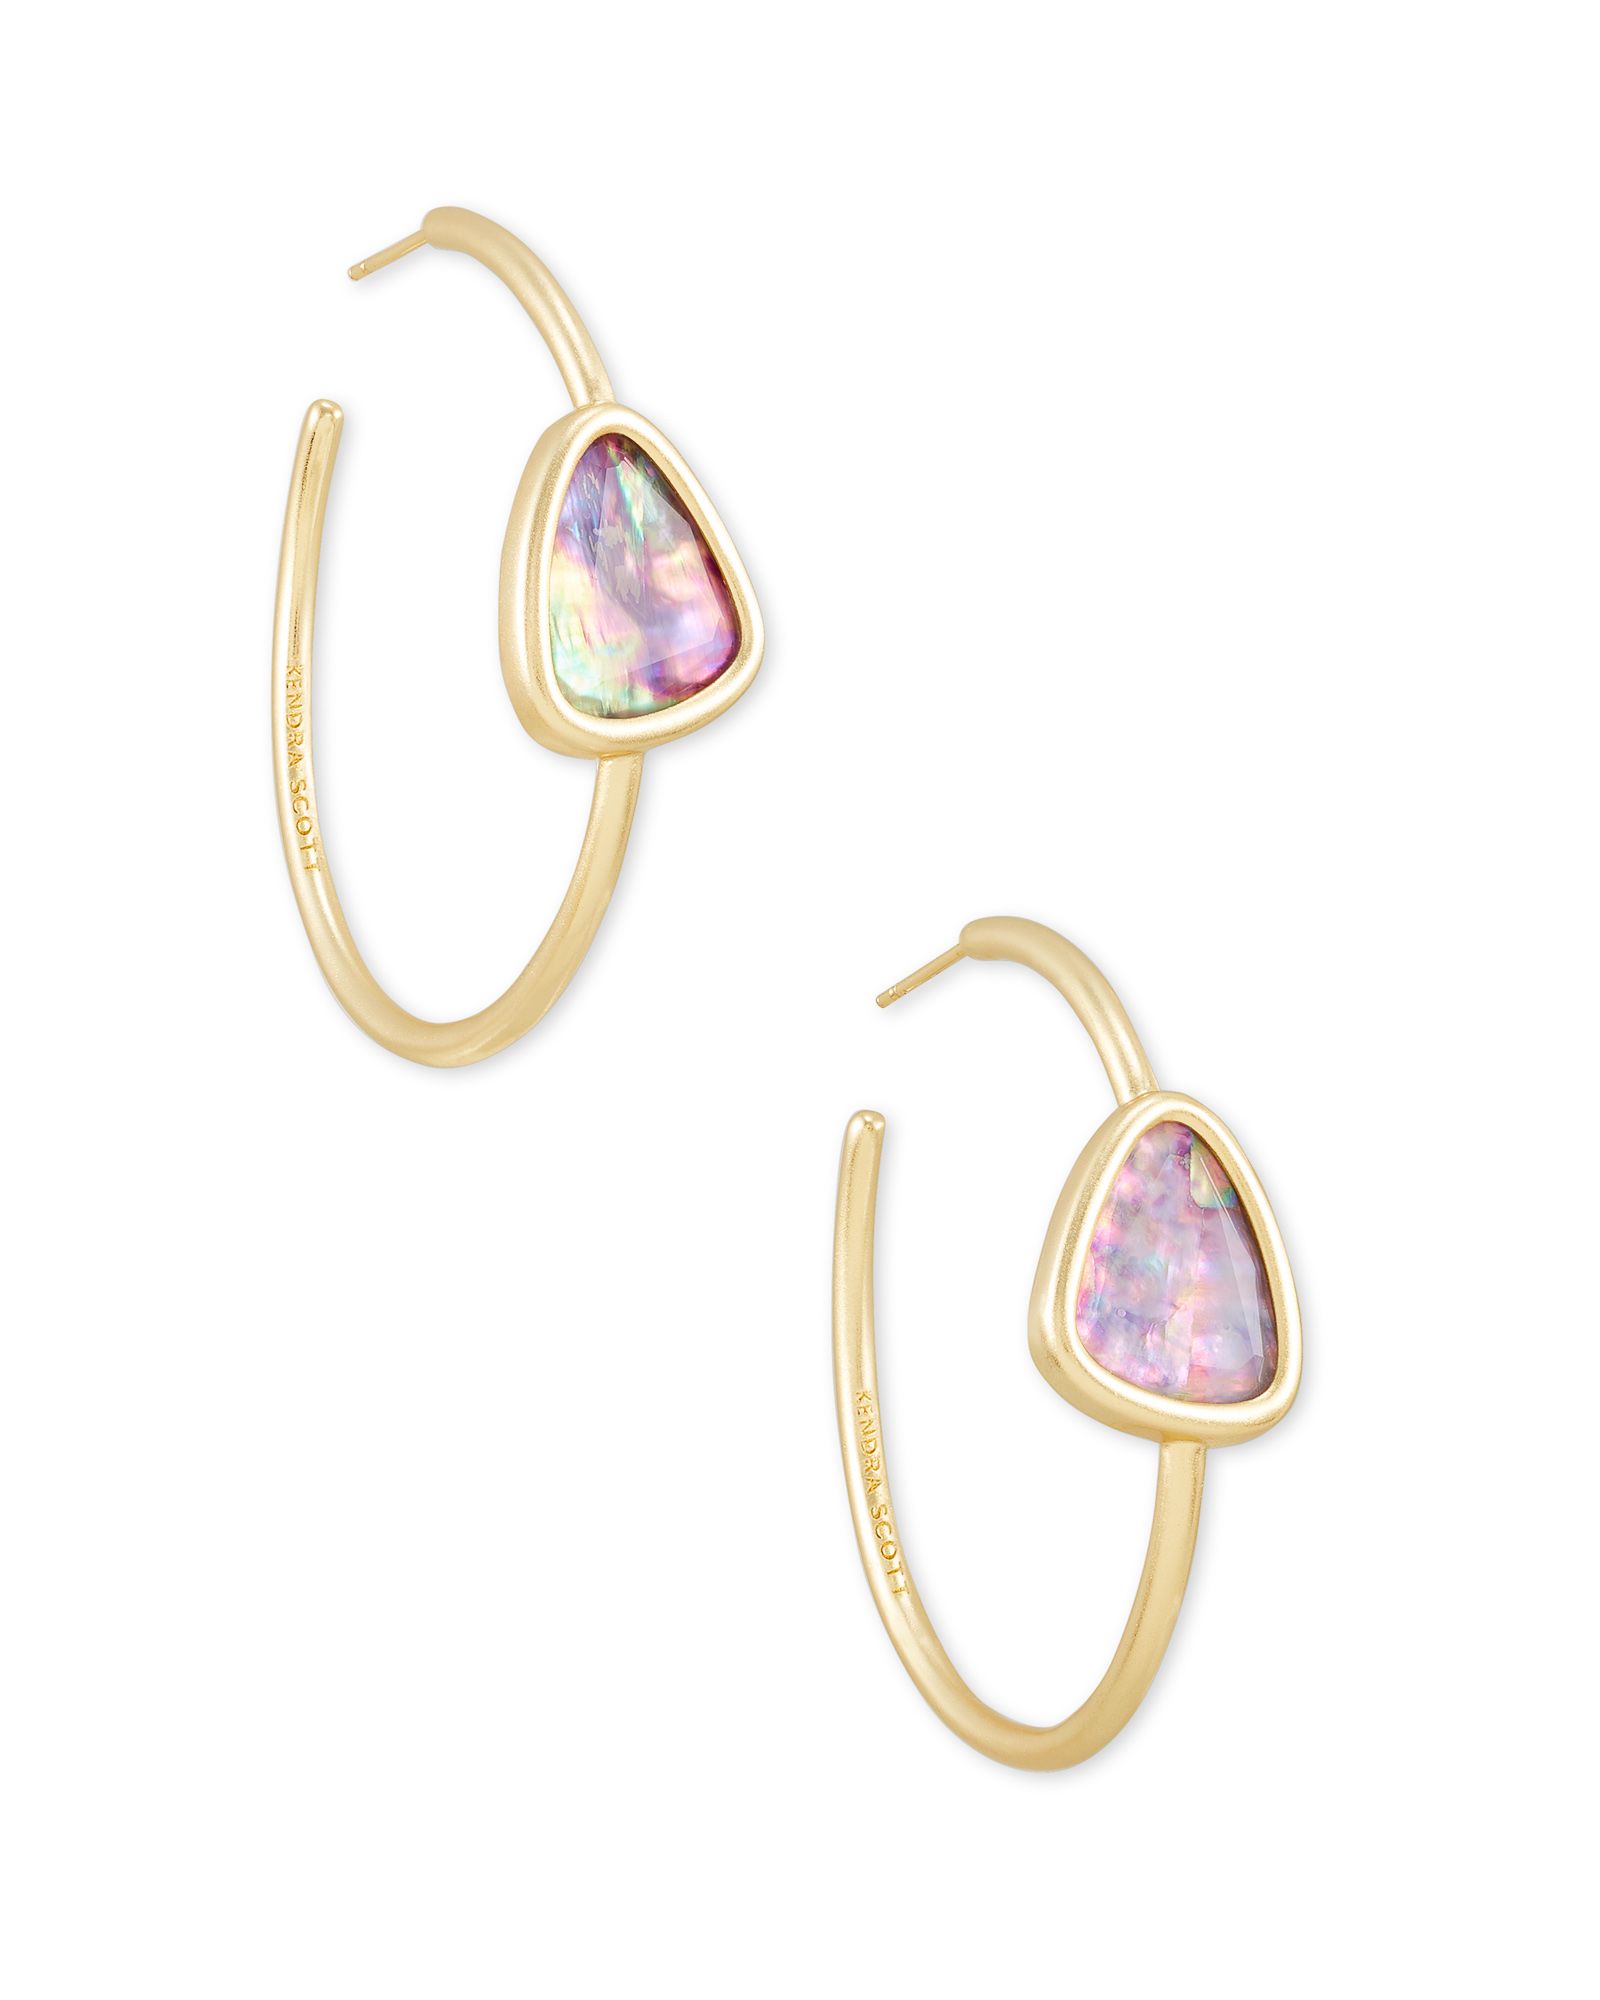 Margot Gold Hoop Earrings in Lilac Abalone | Kendra Scott